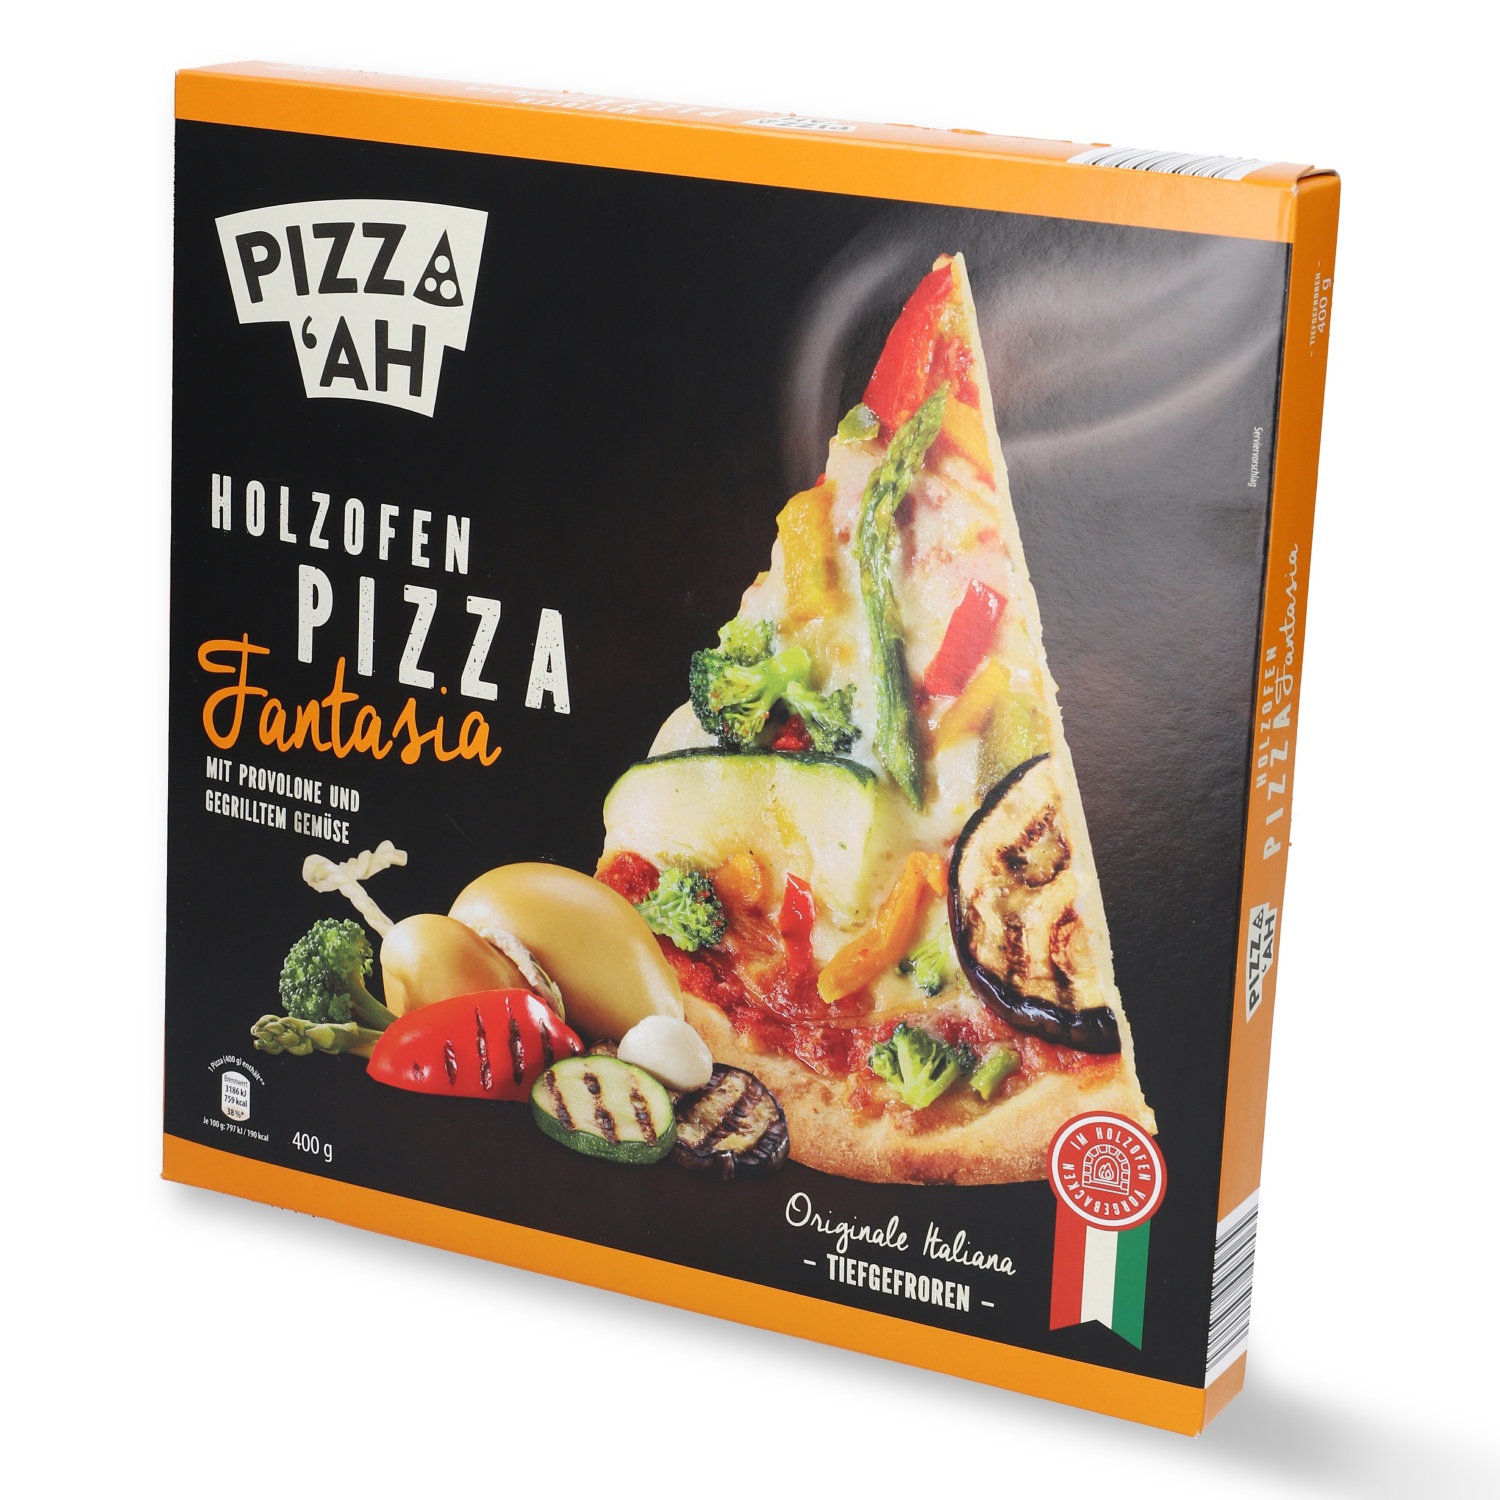 PIZZA'AH Holzofen Pizza Fantasia 400 g